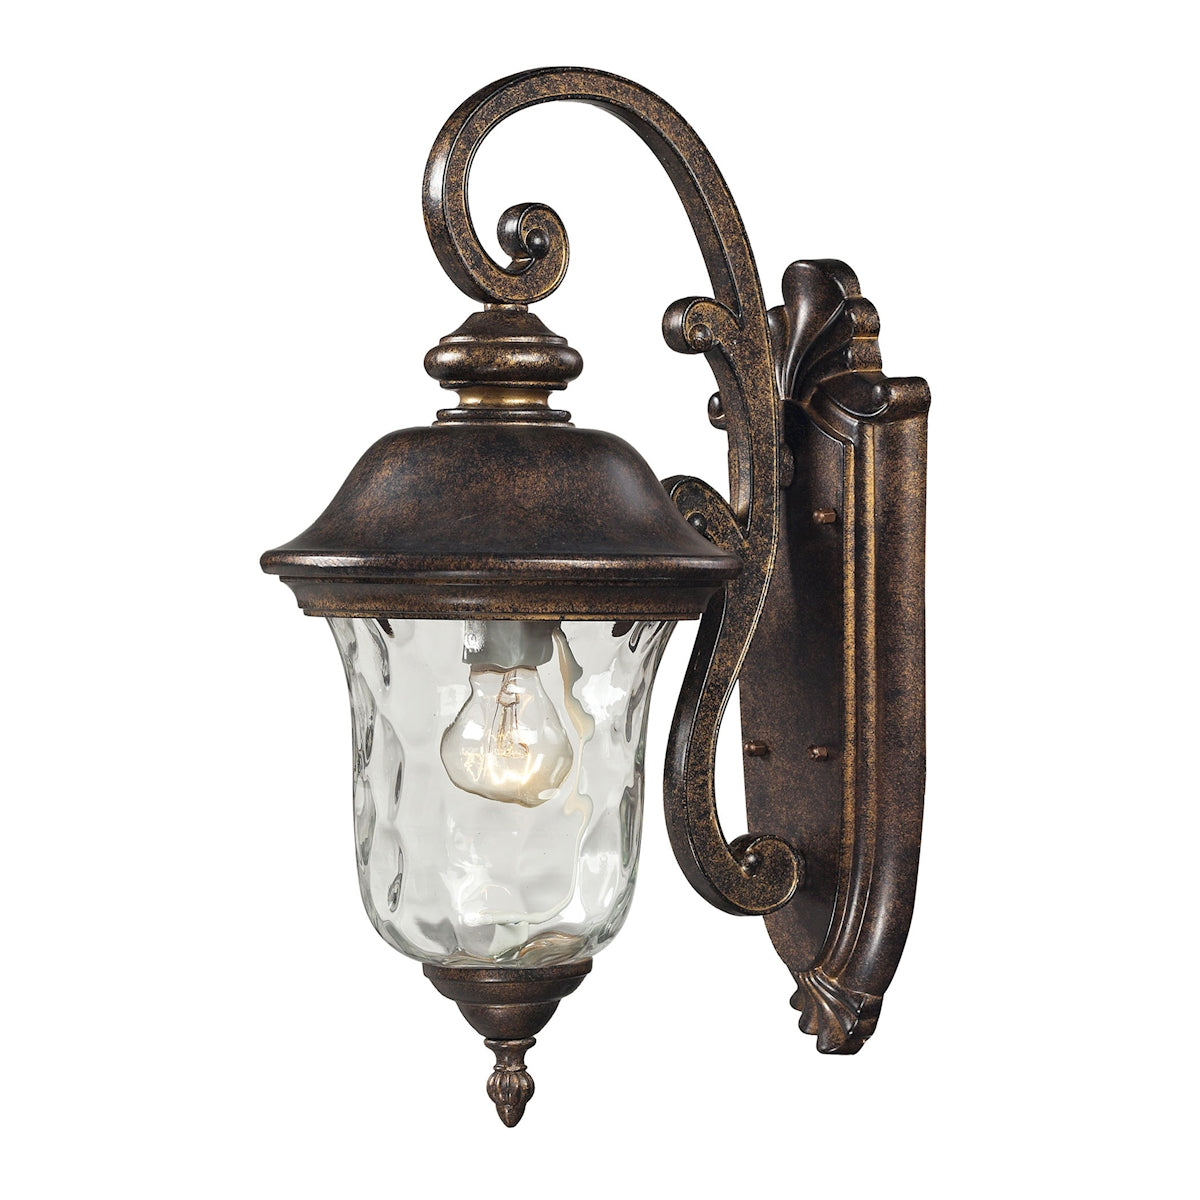 ELK Lighting 45020/1 Lafayette 1-Light Outdoor Wall Lamp in Regal Bronze